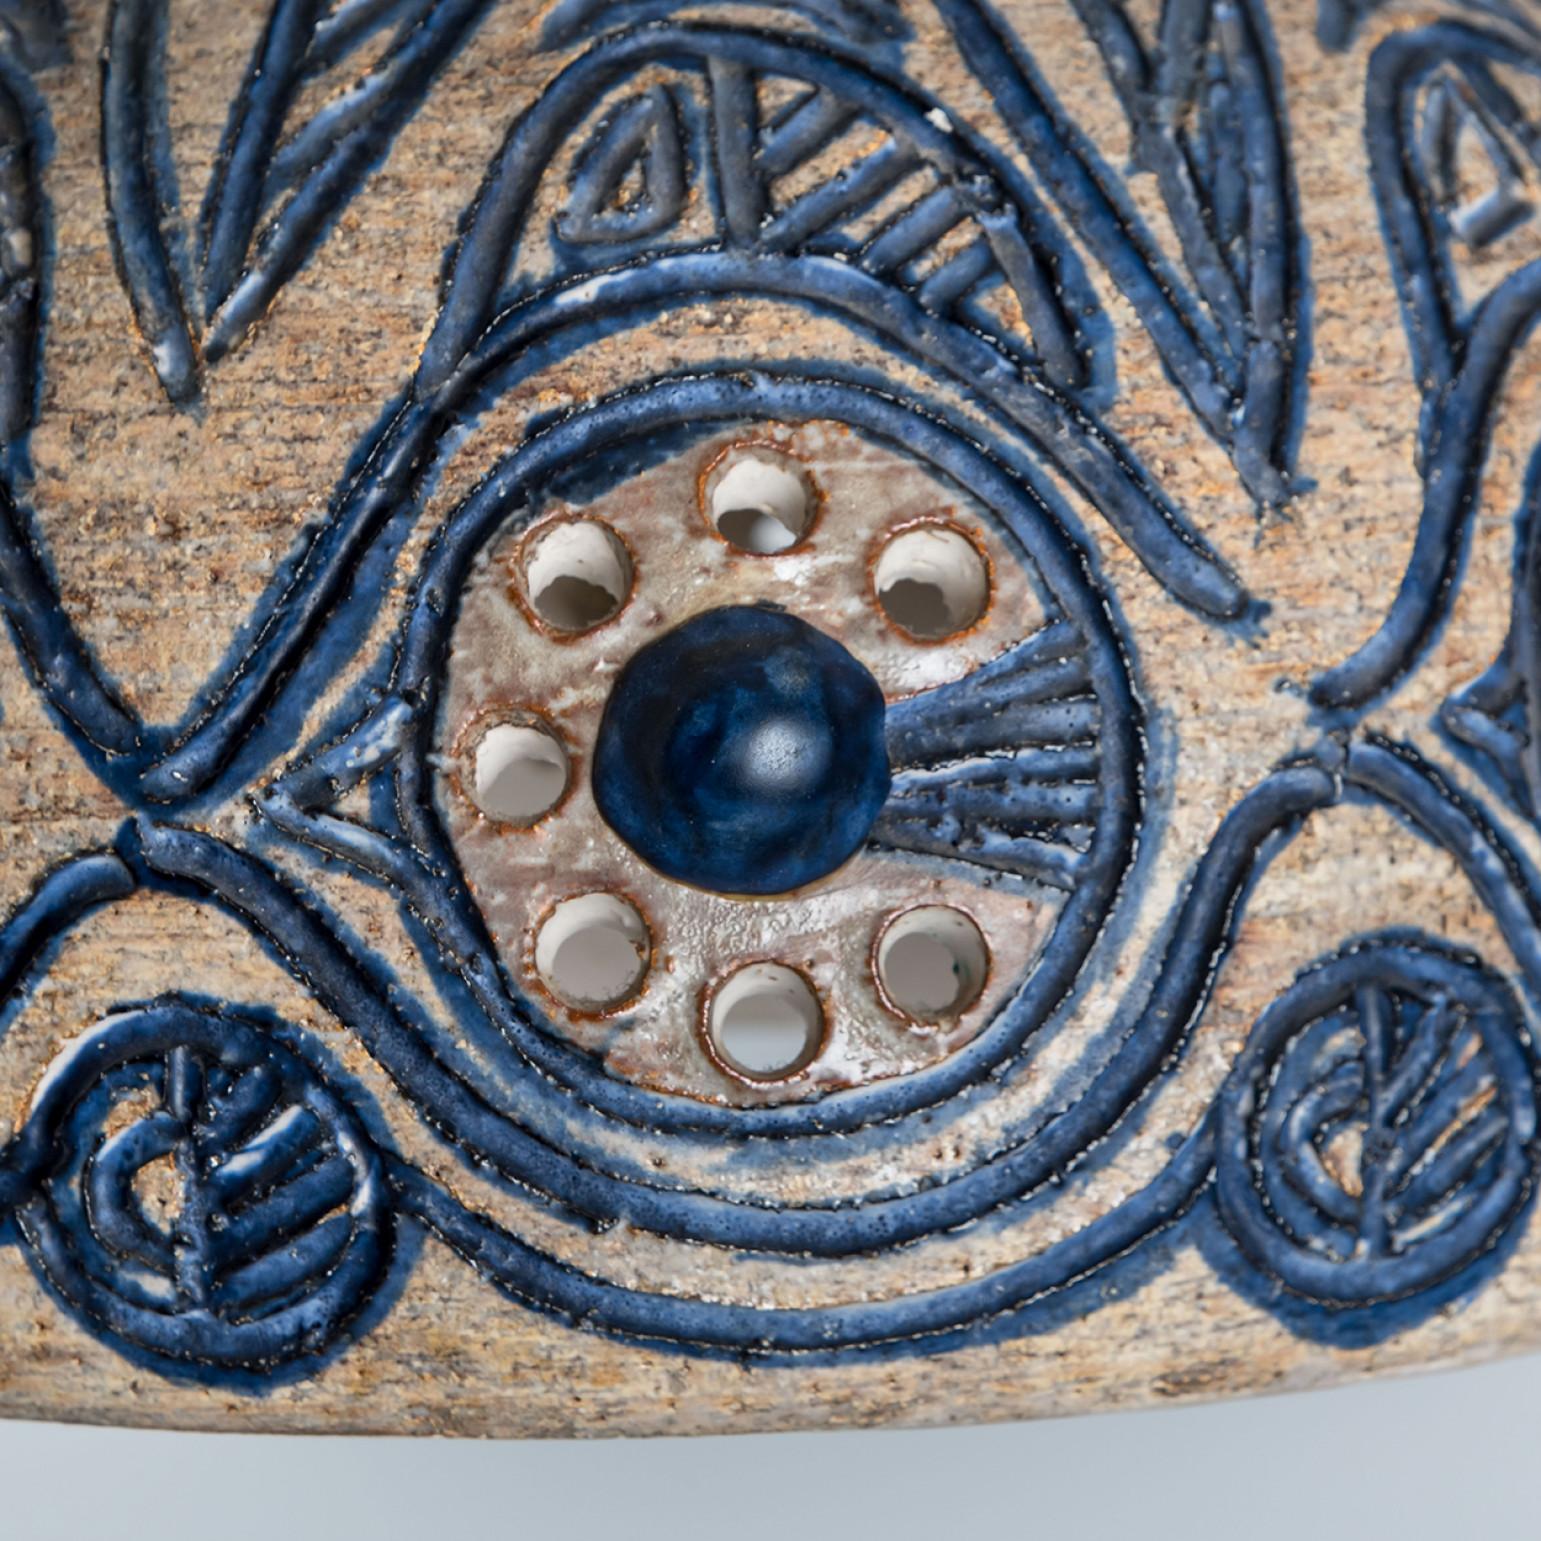 Atemberaubende runde Hängelampe mit einer ungewöhnlichen Form, hergestellt aus reicher beigefarbener und hellblauer Keramik, hergestellt in den 1970er Jahren in Dänemark. Wir haben auch eine Vielzahl von einzigartigen farbigen Keramik-Licht-Sets und